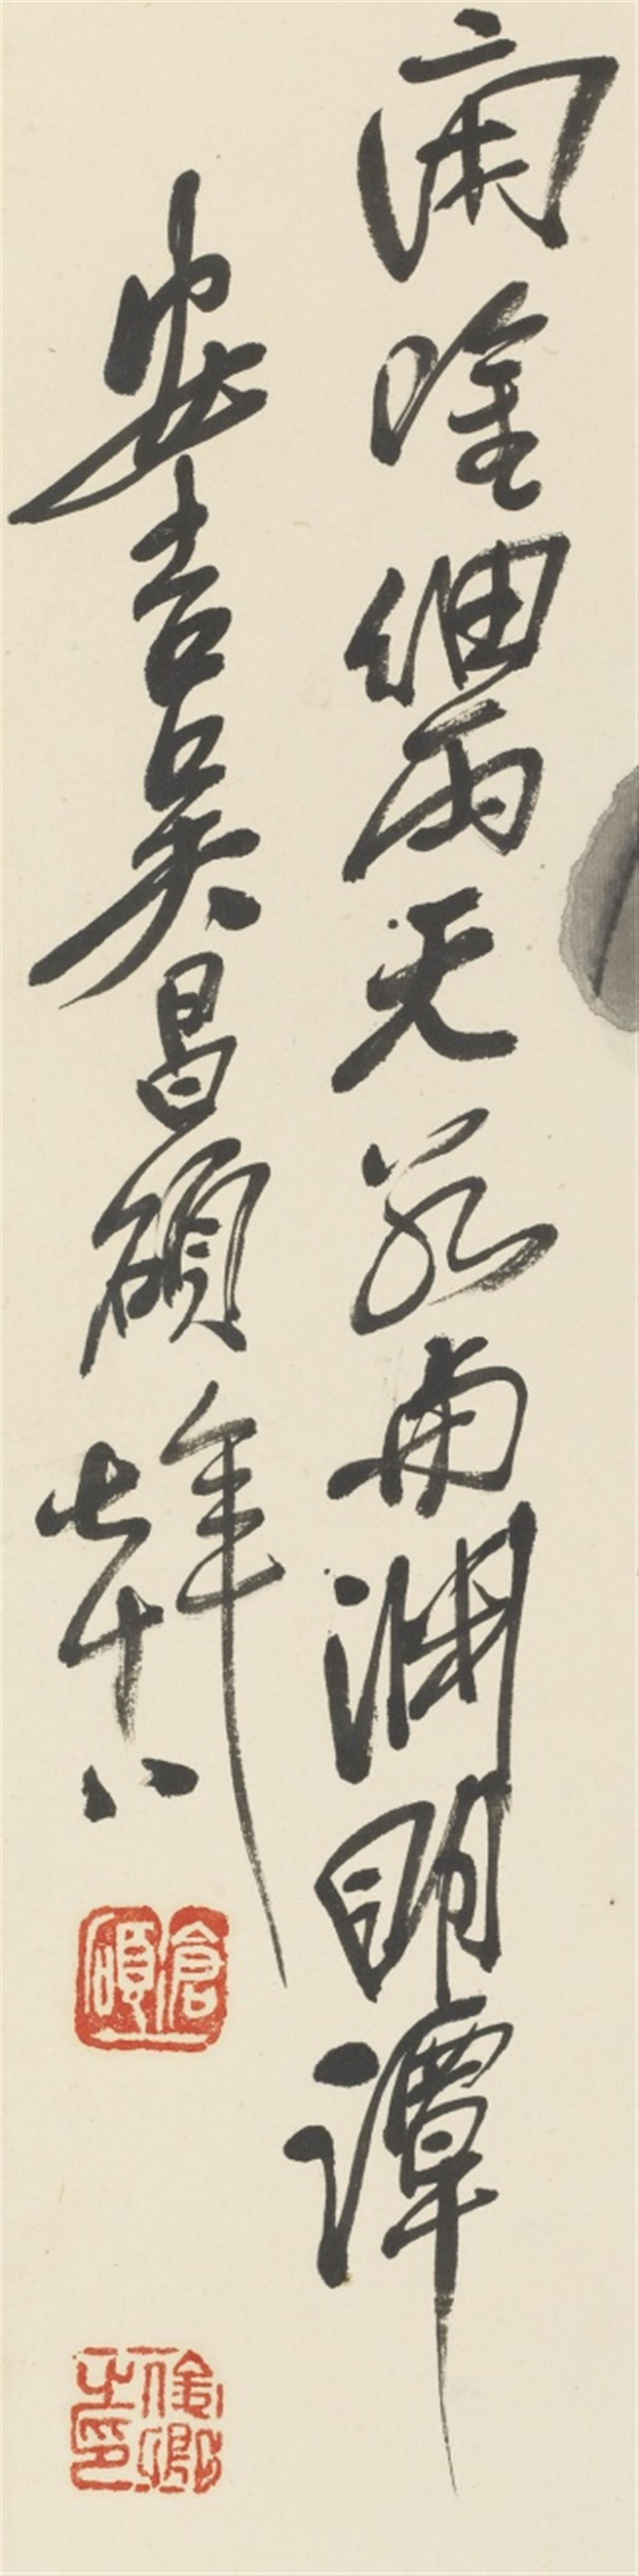 Wu Changshuo - Chrysanthemen an Felsen. Hängerolle. Tusche und Farben auf Papier. Aufschrift, sign.: Wu Changshuo qishiba nian und Siegel: Cang shuo, Junqing zhi yin und Banri cun. - image-2